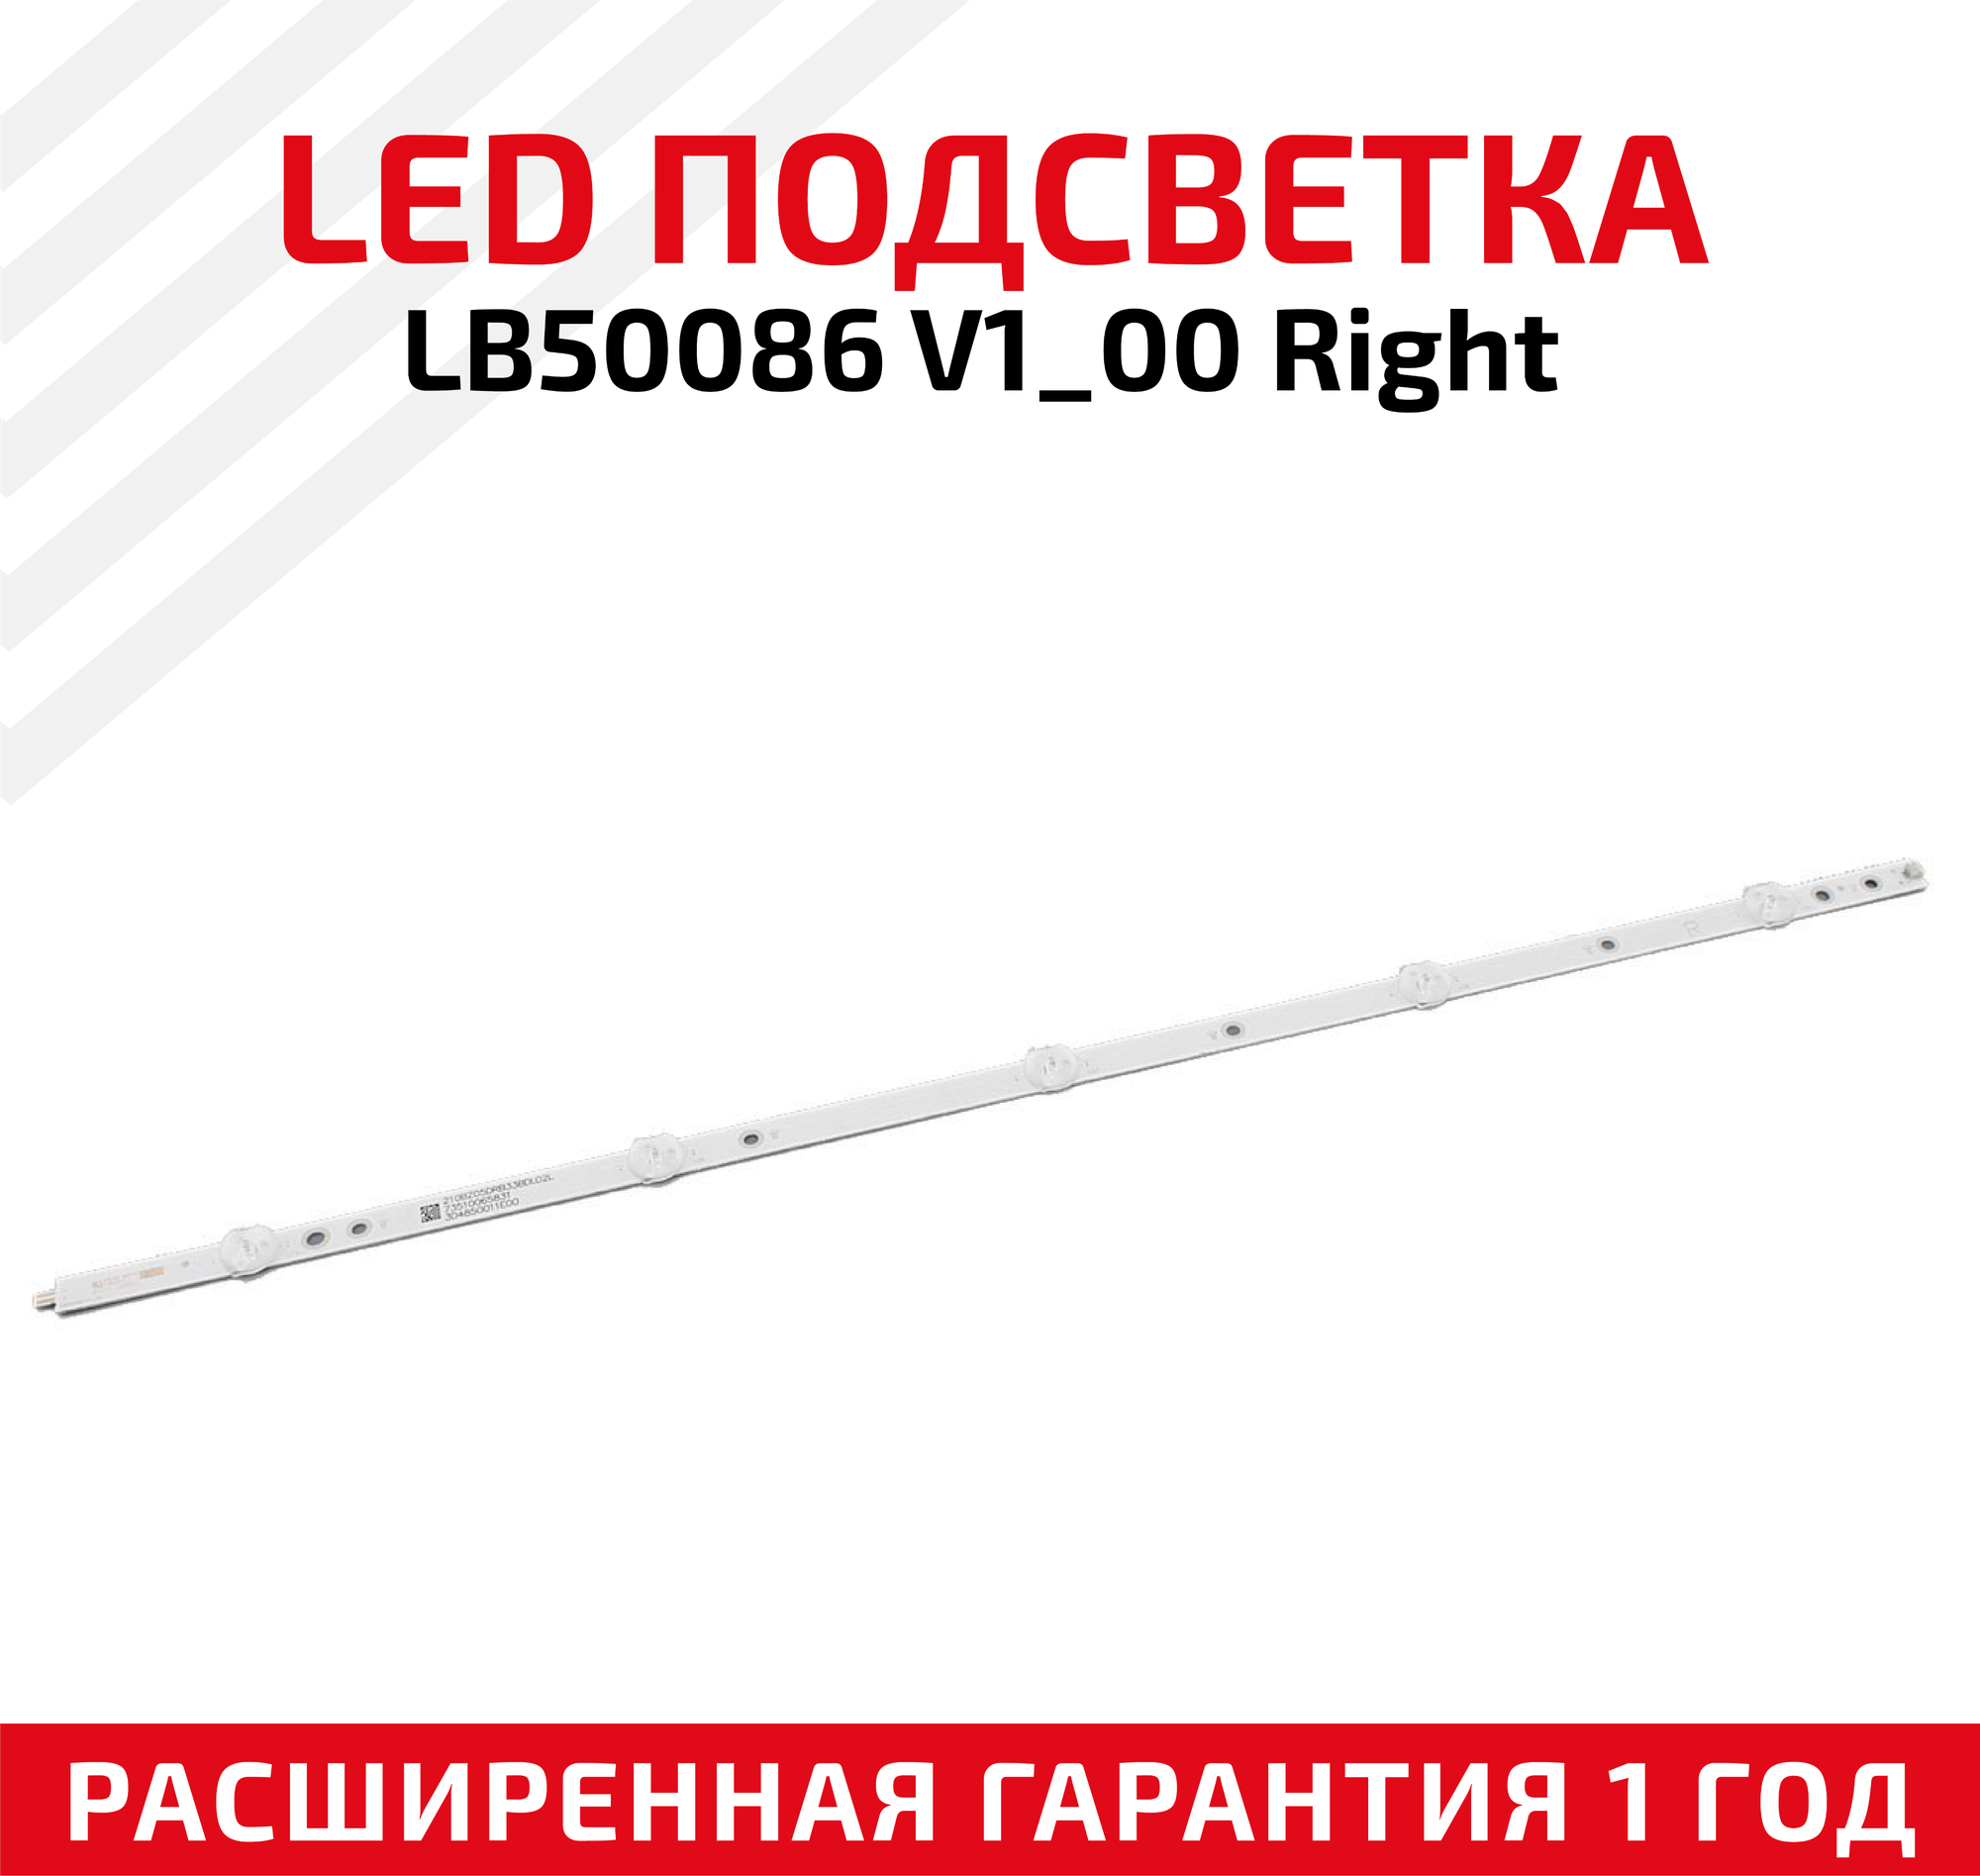 LED подсветка (светодиодная планка) для телевизора LB50086 V1_00 Right